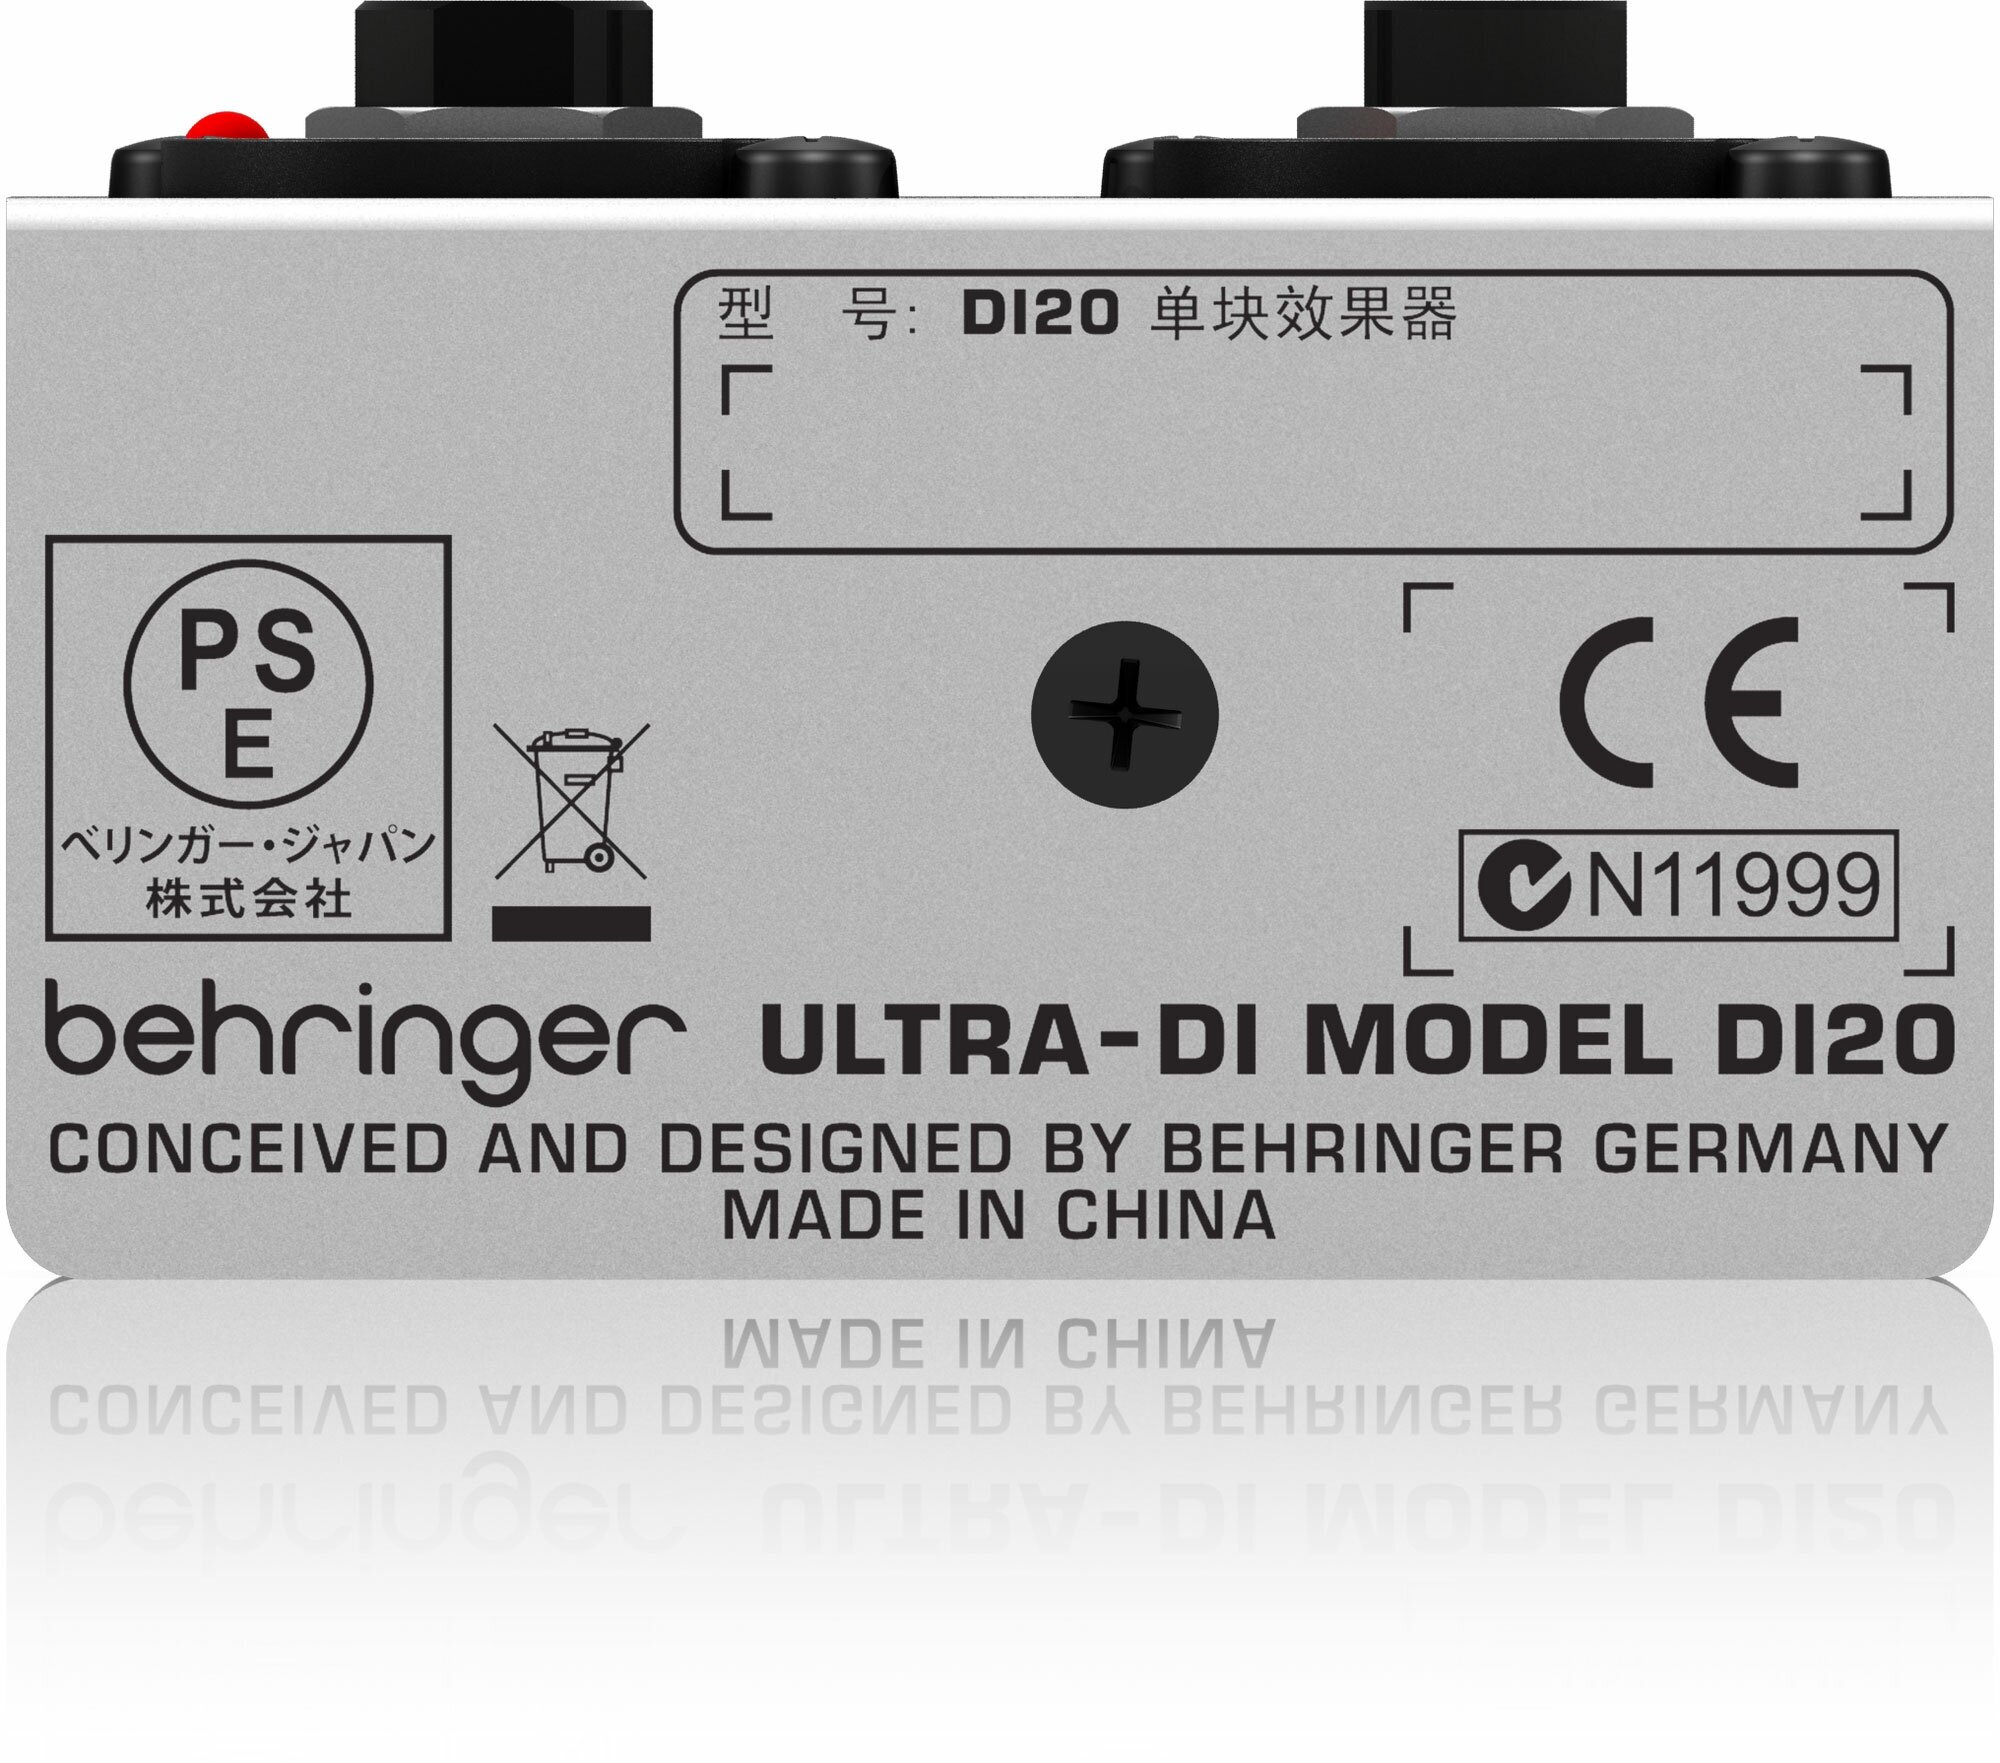 BEHRINGER DI20 Профессиональный активный 2-х канальный директ бокс / сплитер питание: батарея 9 В или фантомное